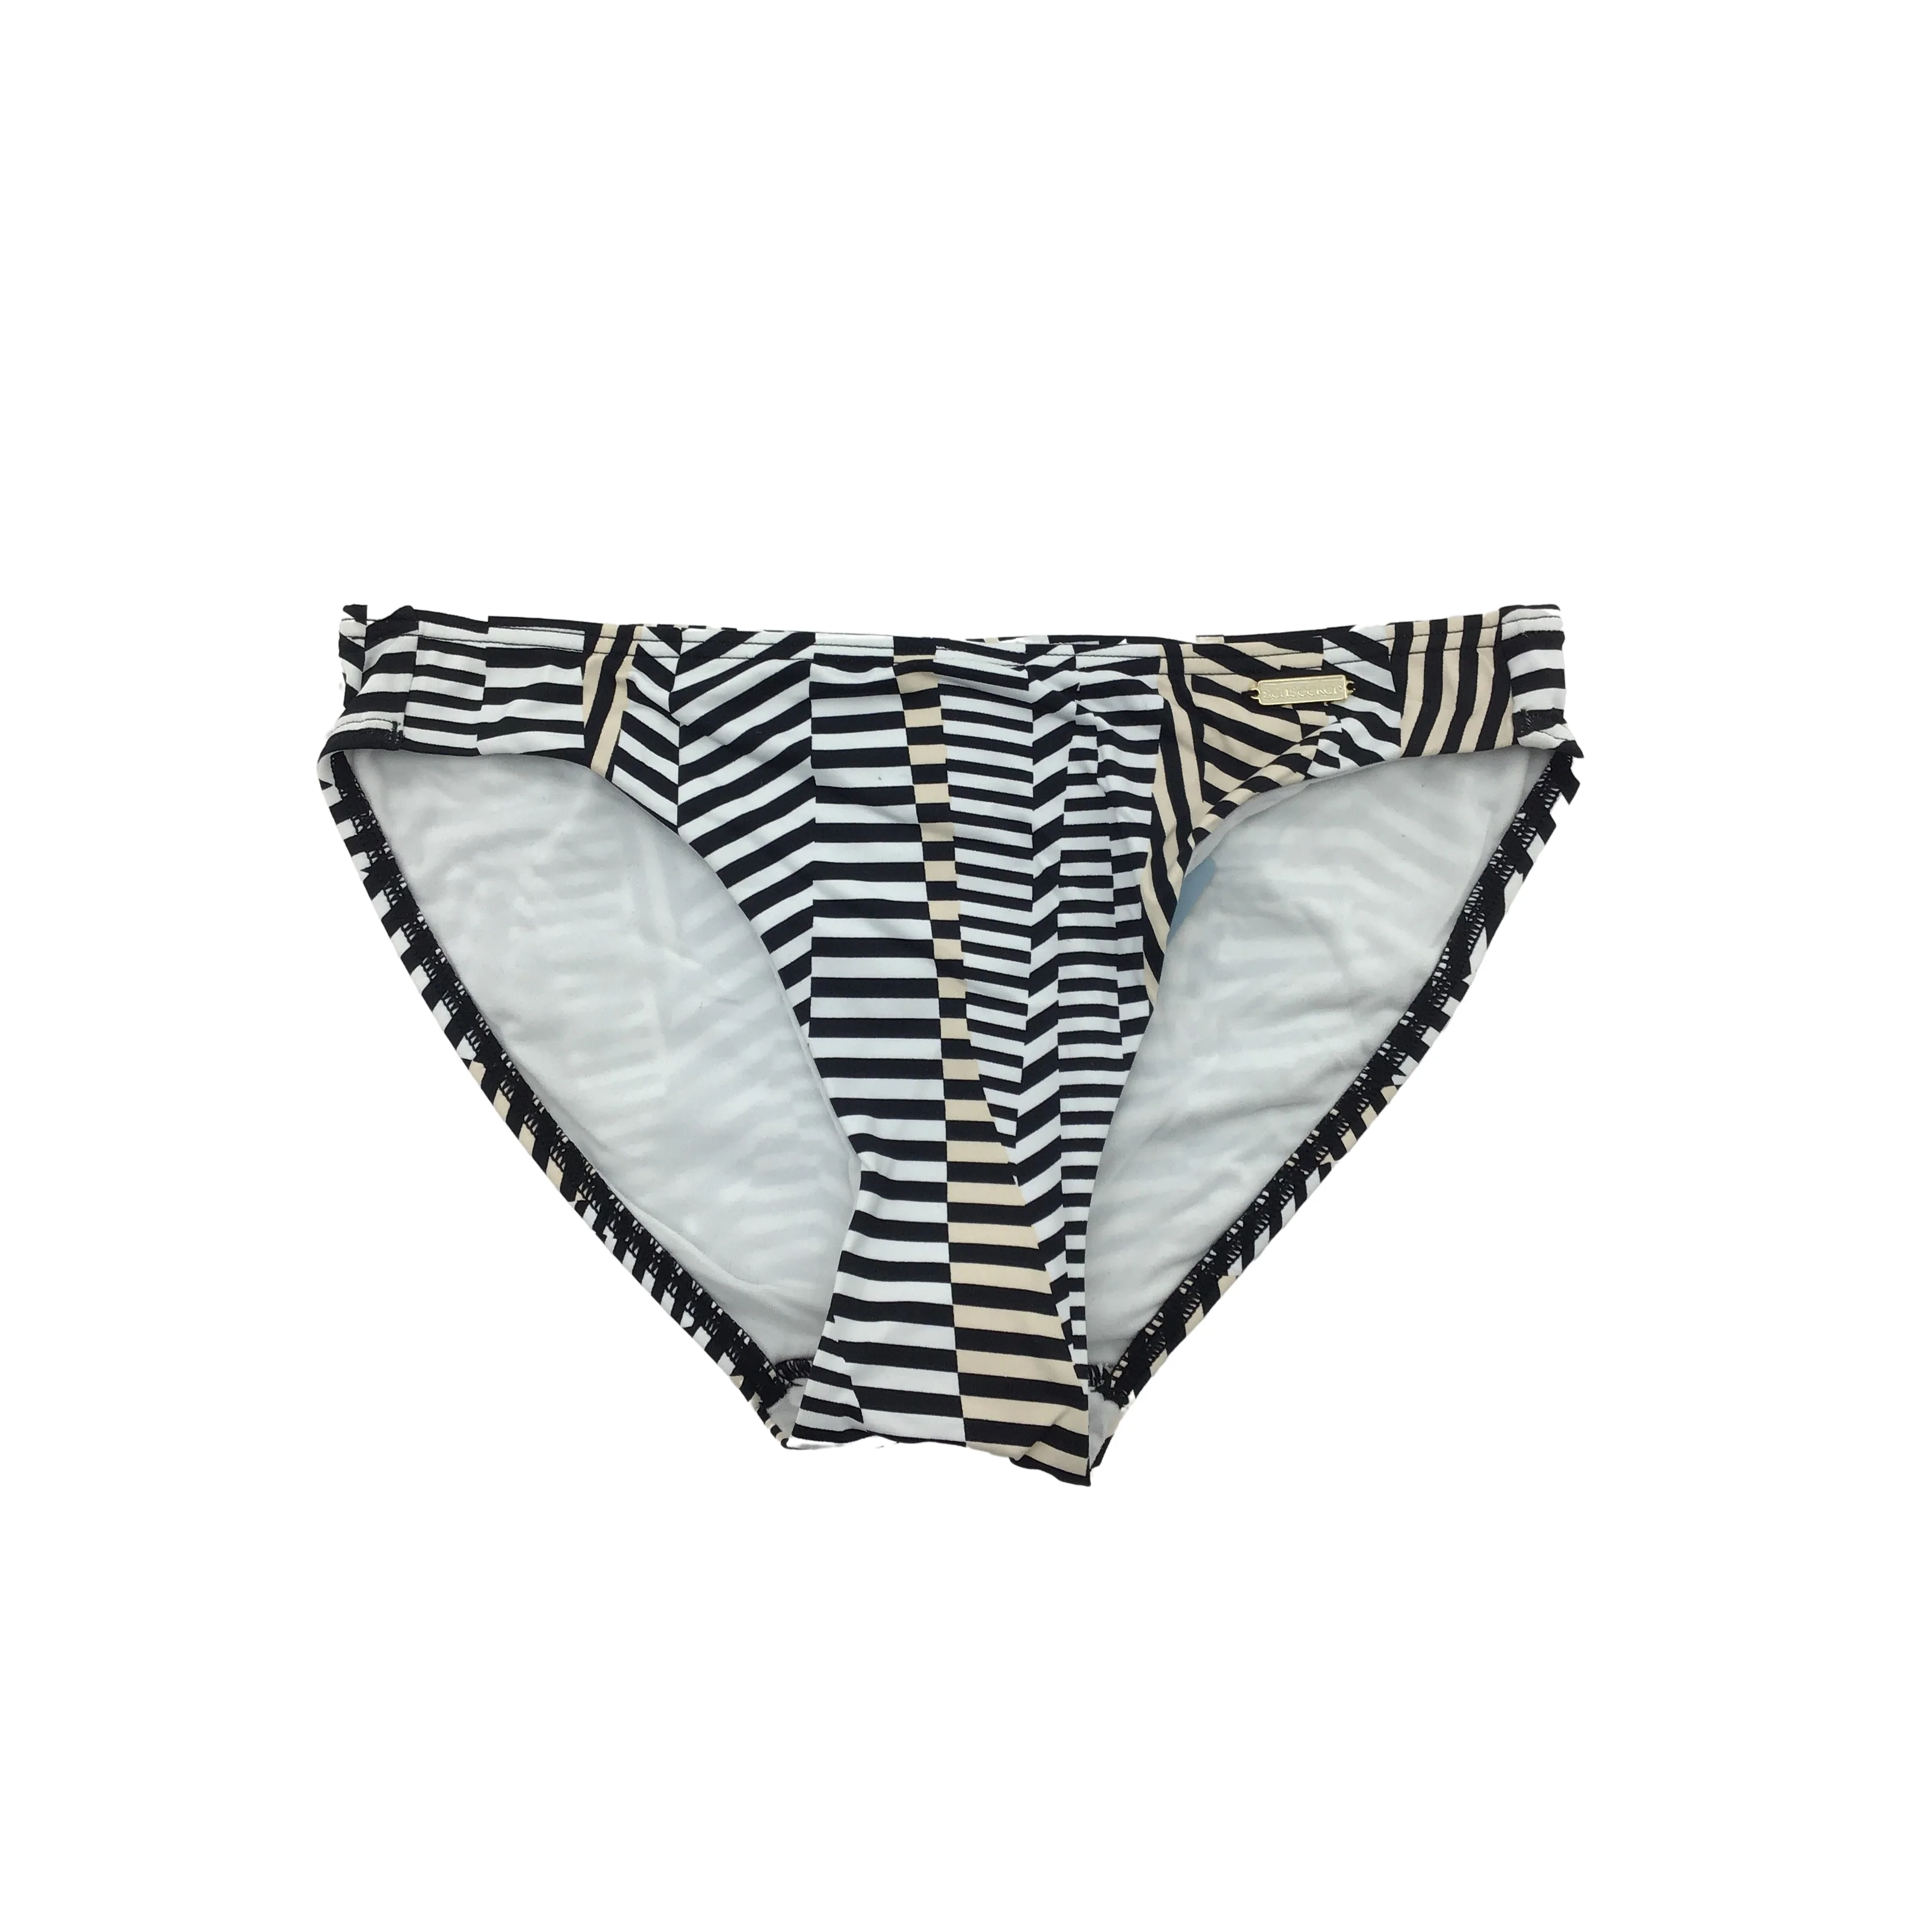 Sunseekers Women's Bathing Suit: Swimwear bottoms / Size 8